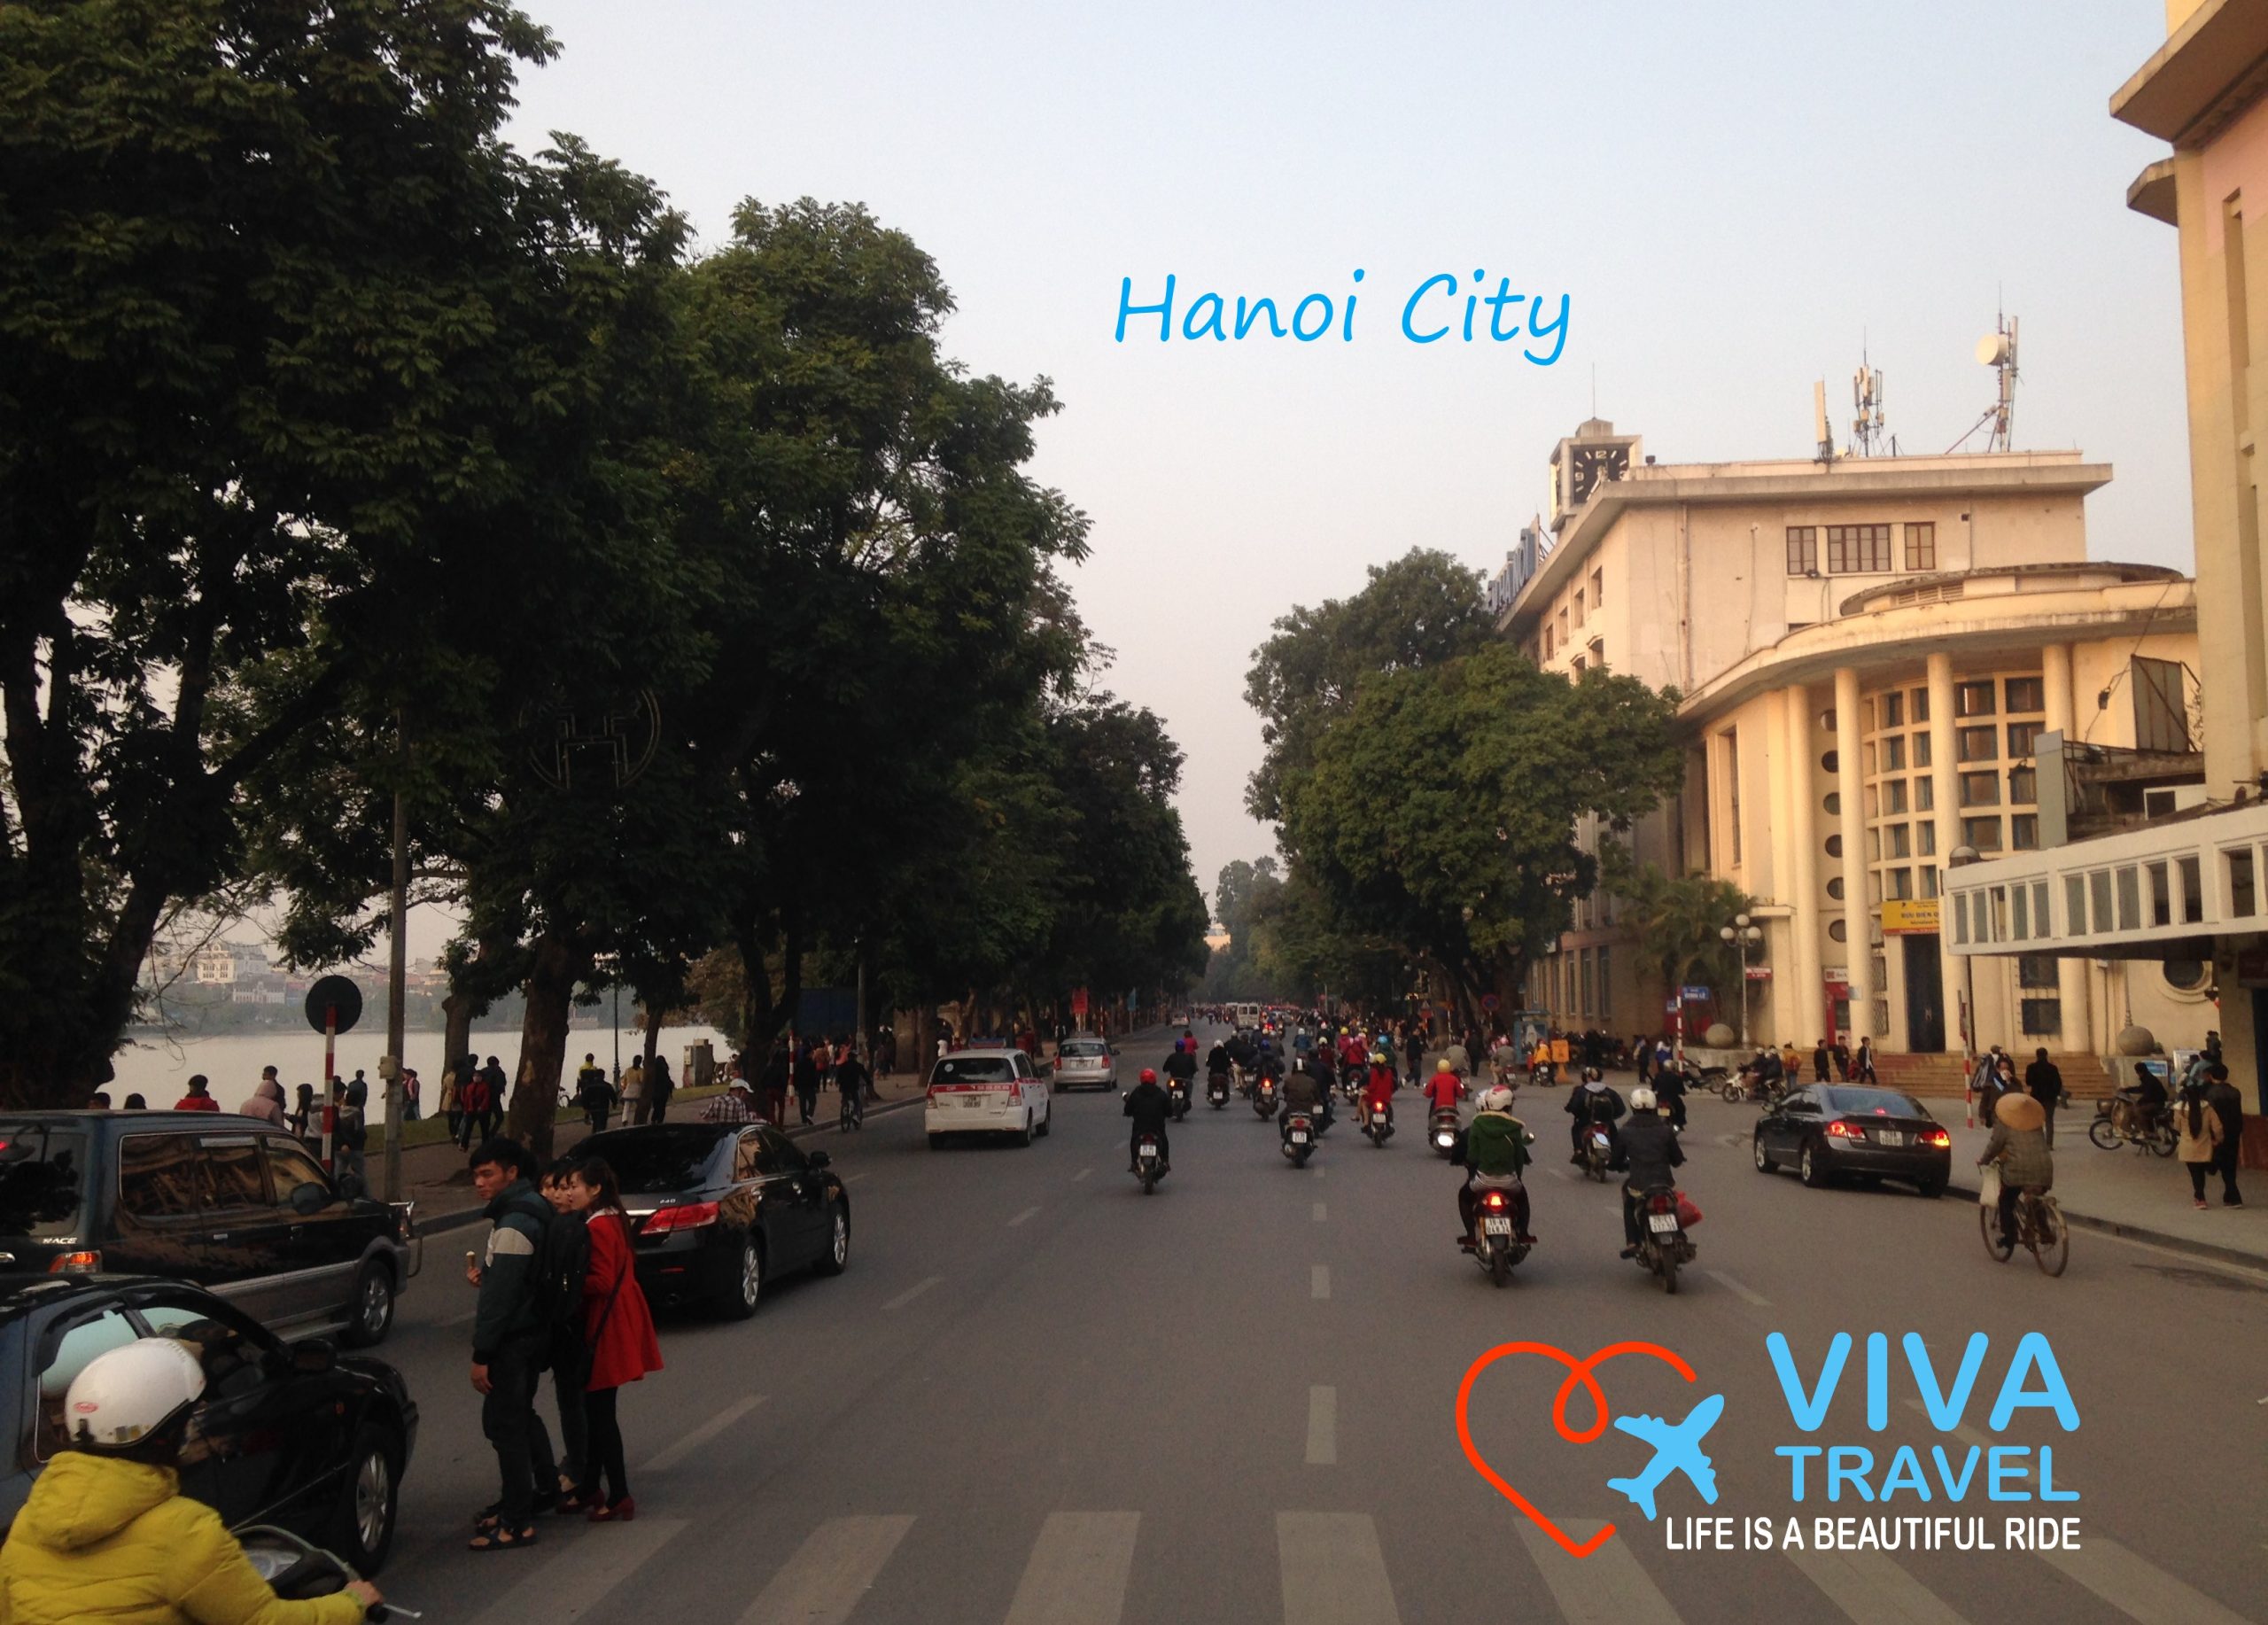 Circuit Vietnam Experienta si Aventura Vietnam cu Viva Travel Hanoi City